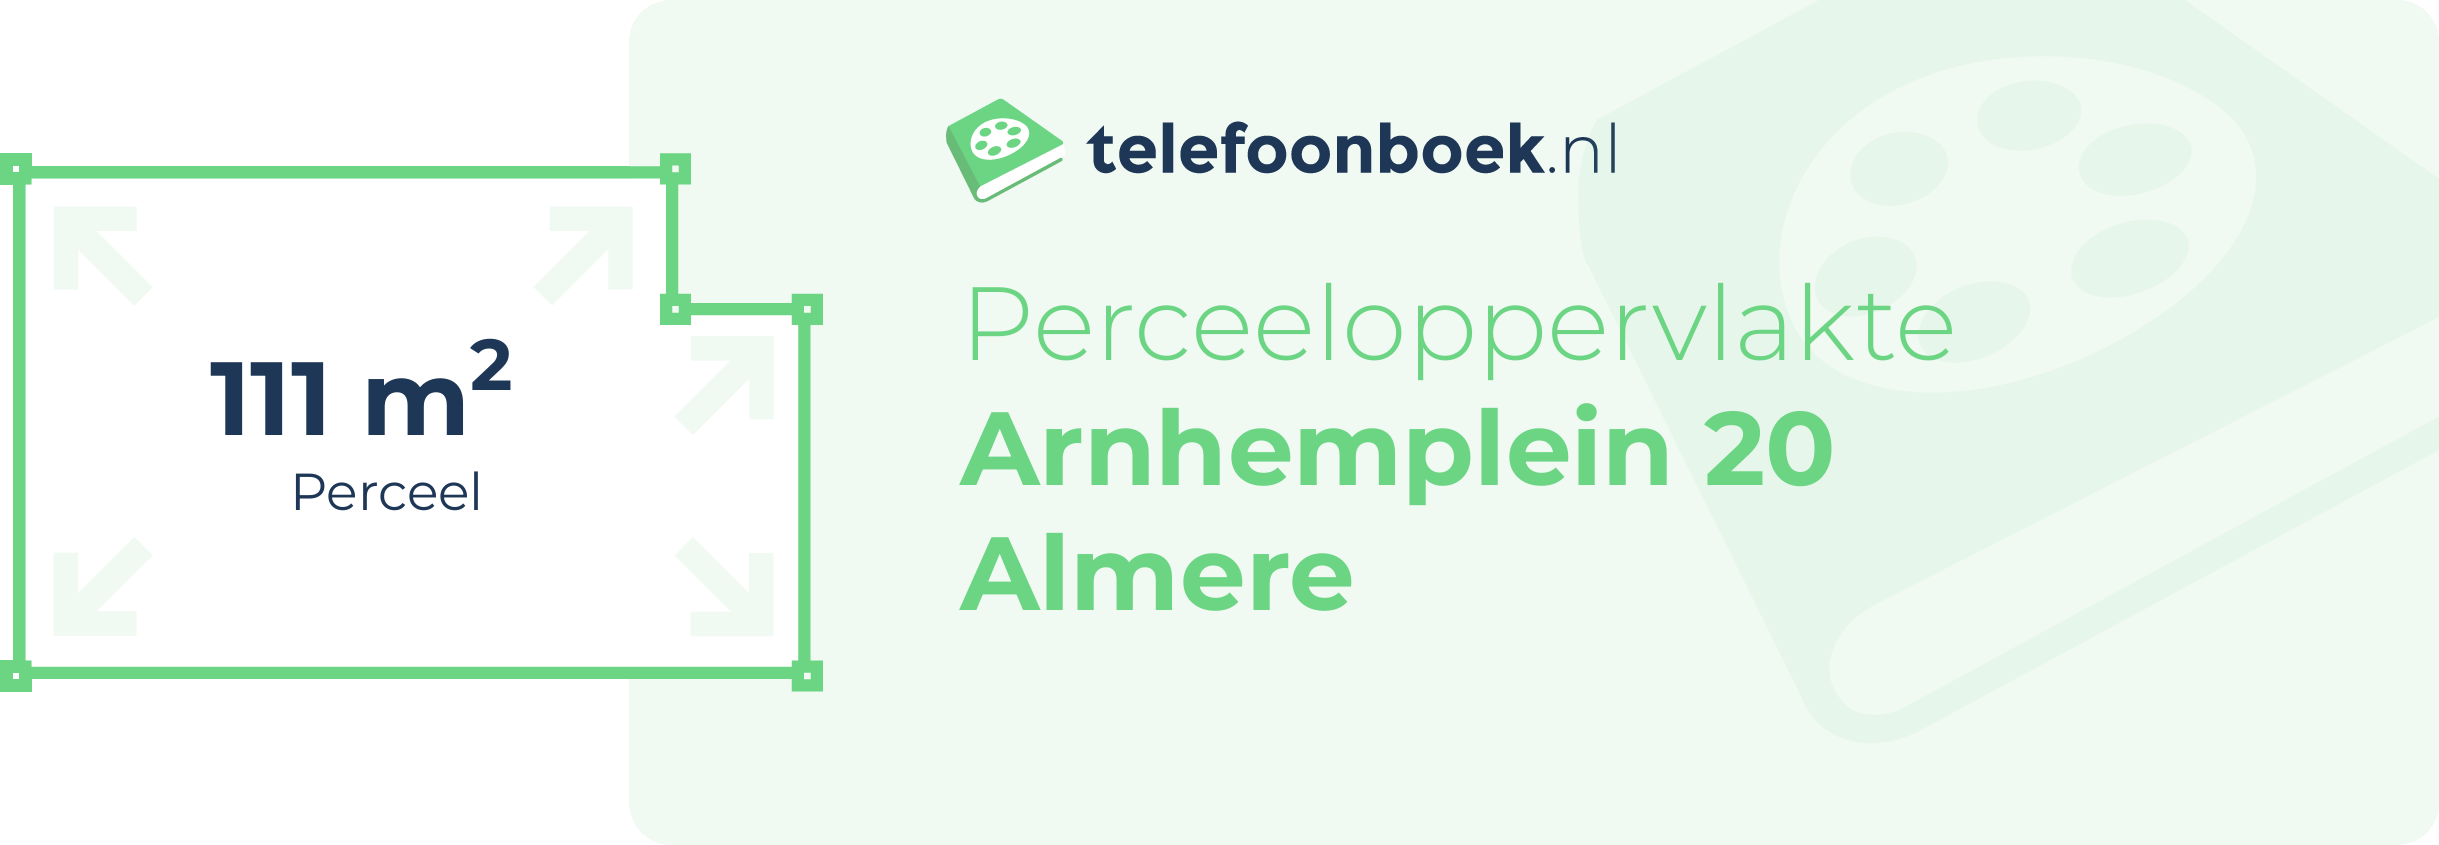 Perceeloppervlakte Arnhemplein 20 Almere